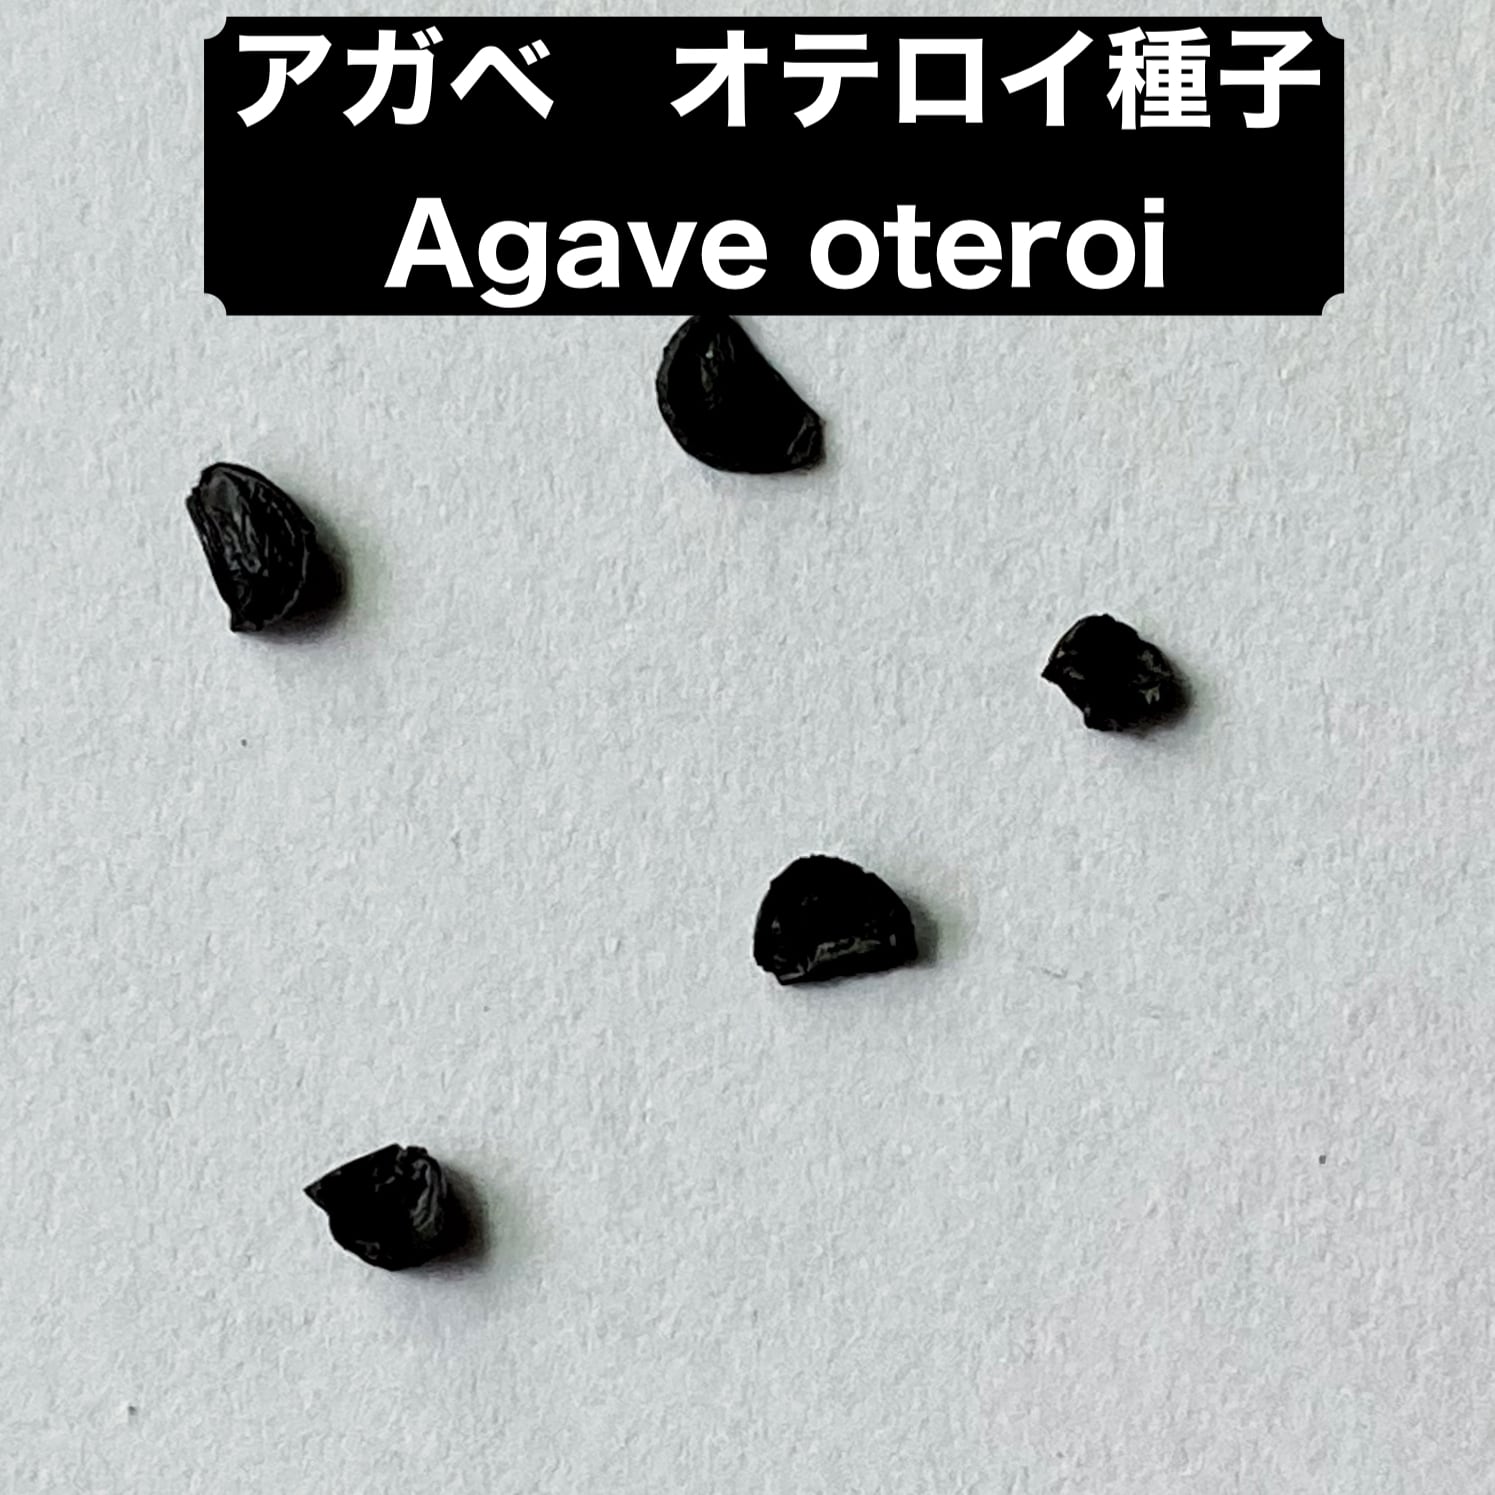 アガベの種 オテロイ Agave oteroi 500粒